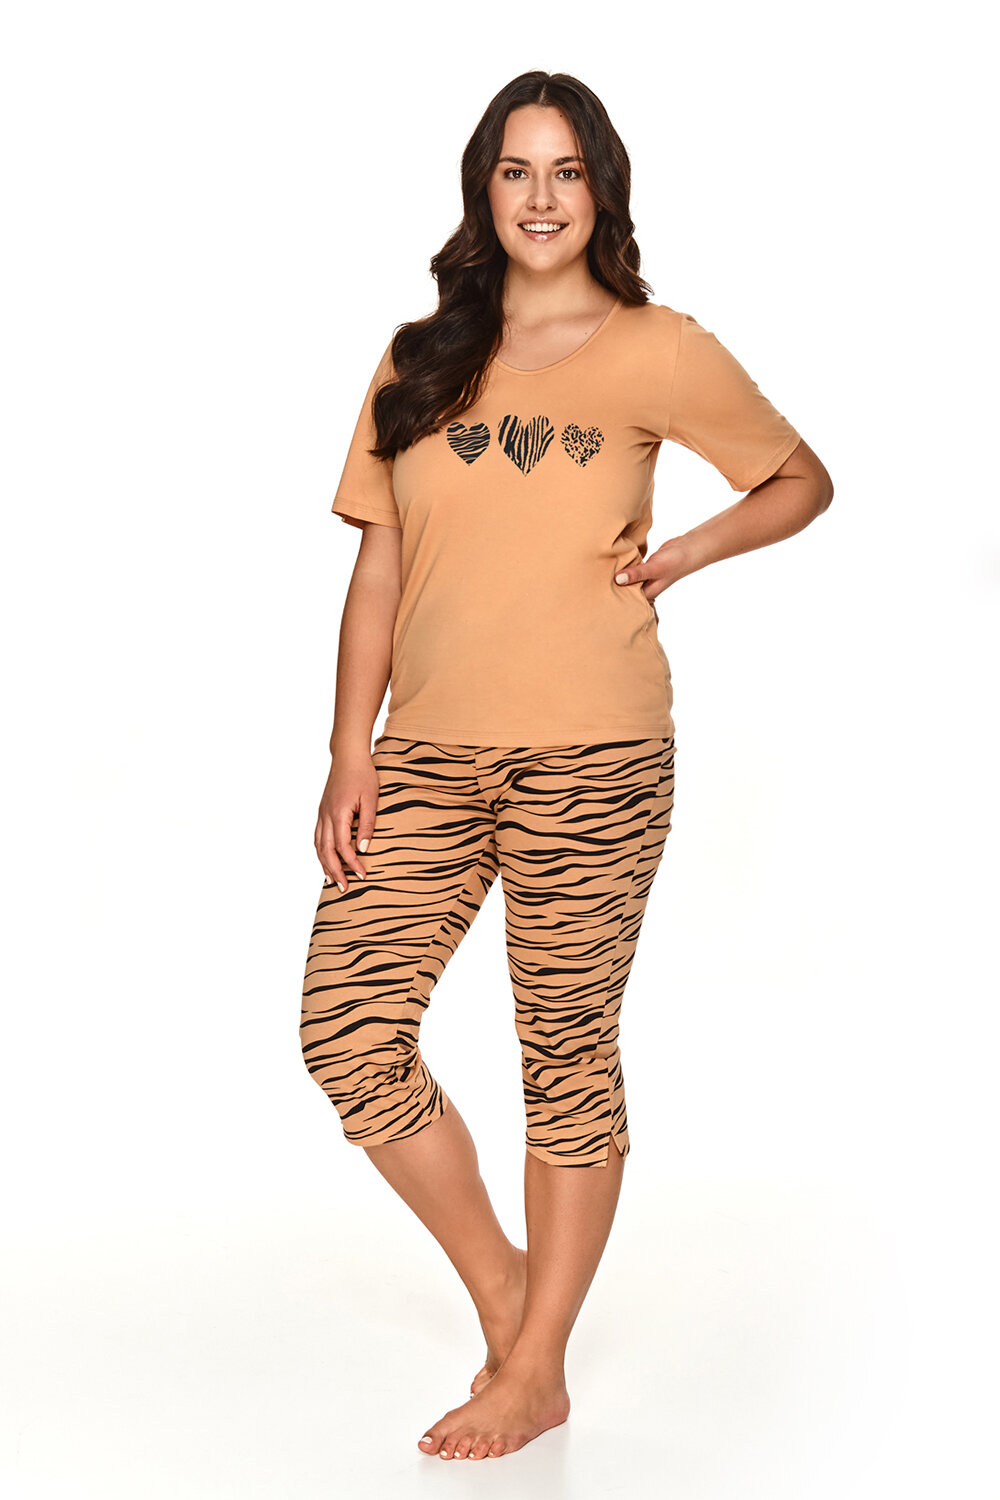 Пижама женская TARO Yelena 2696-01, футболка и брюки, оранжевый, хлопок 100% (Размер: XXL)